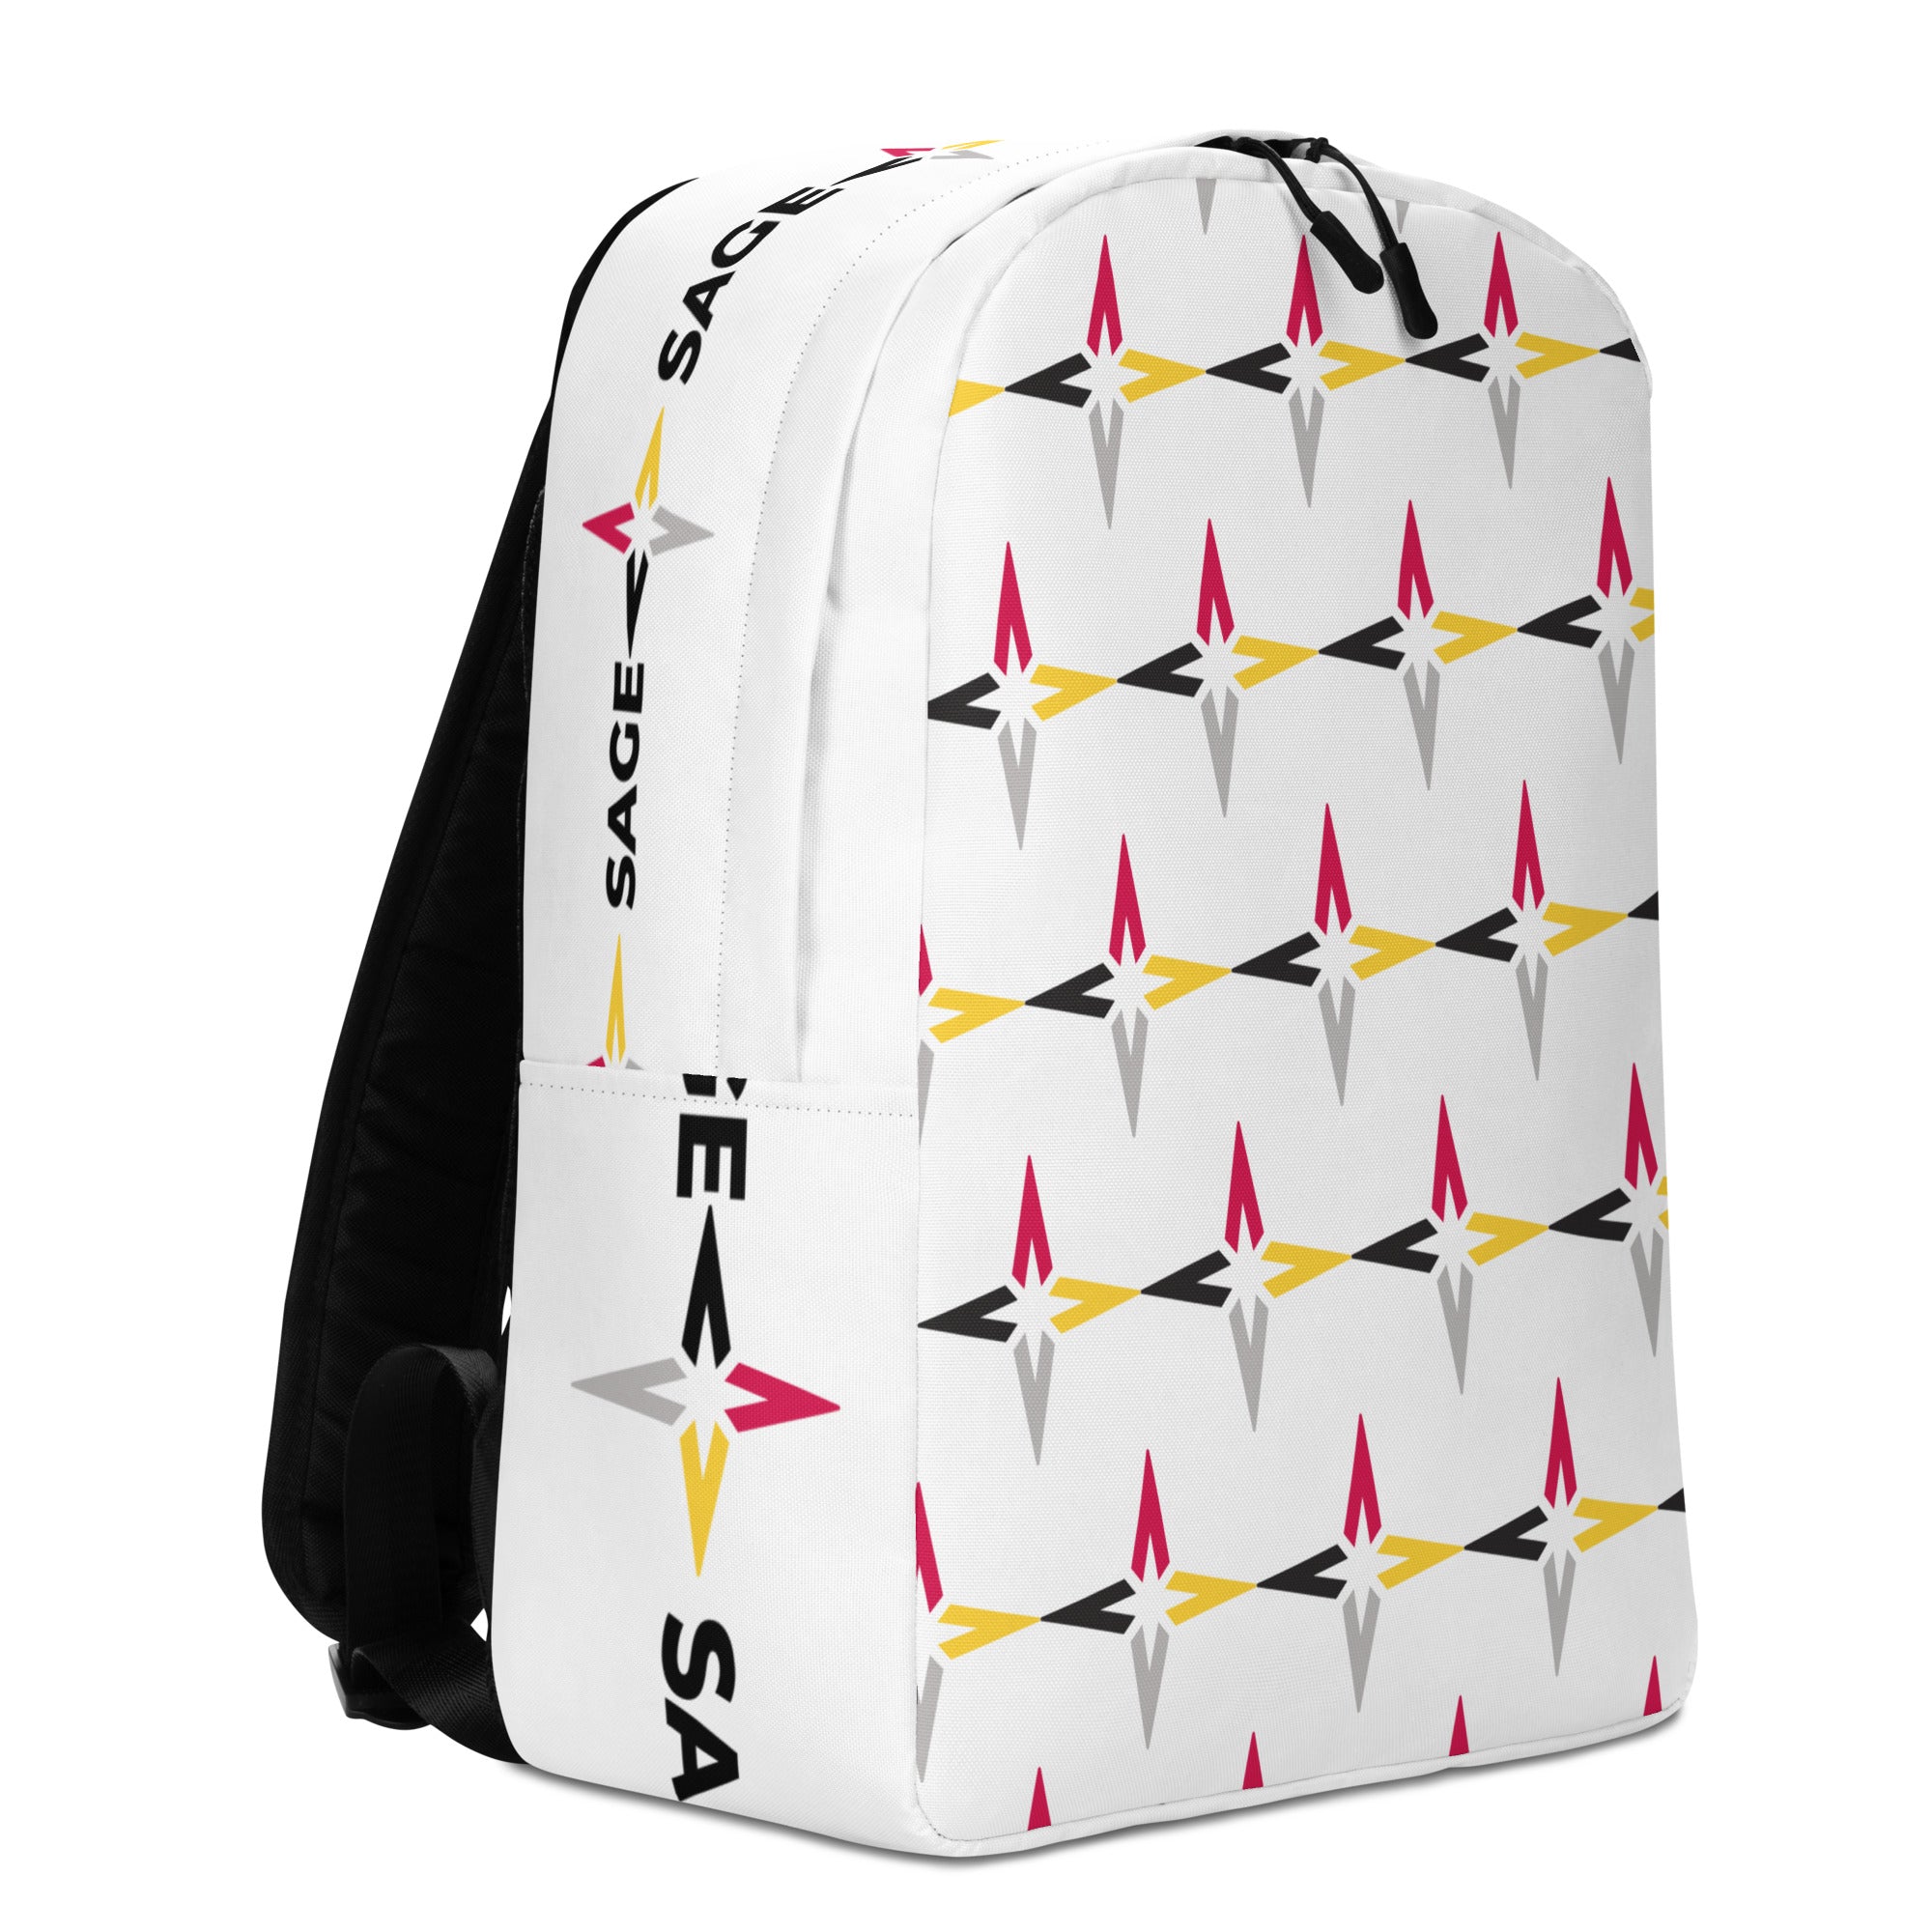 SAGE Minimalist Backpack